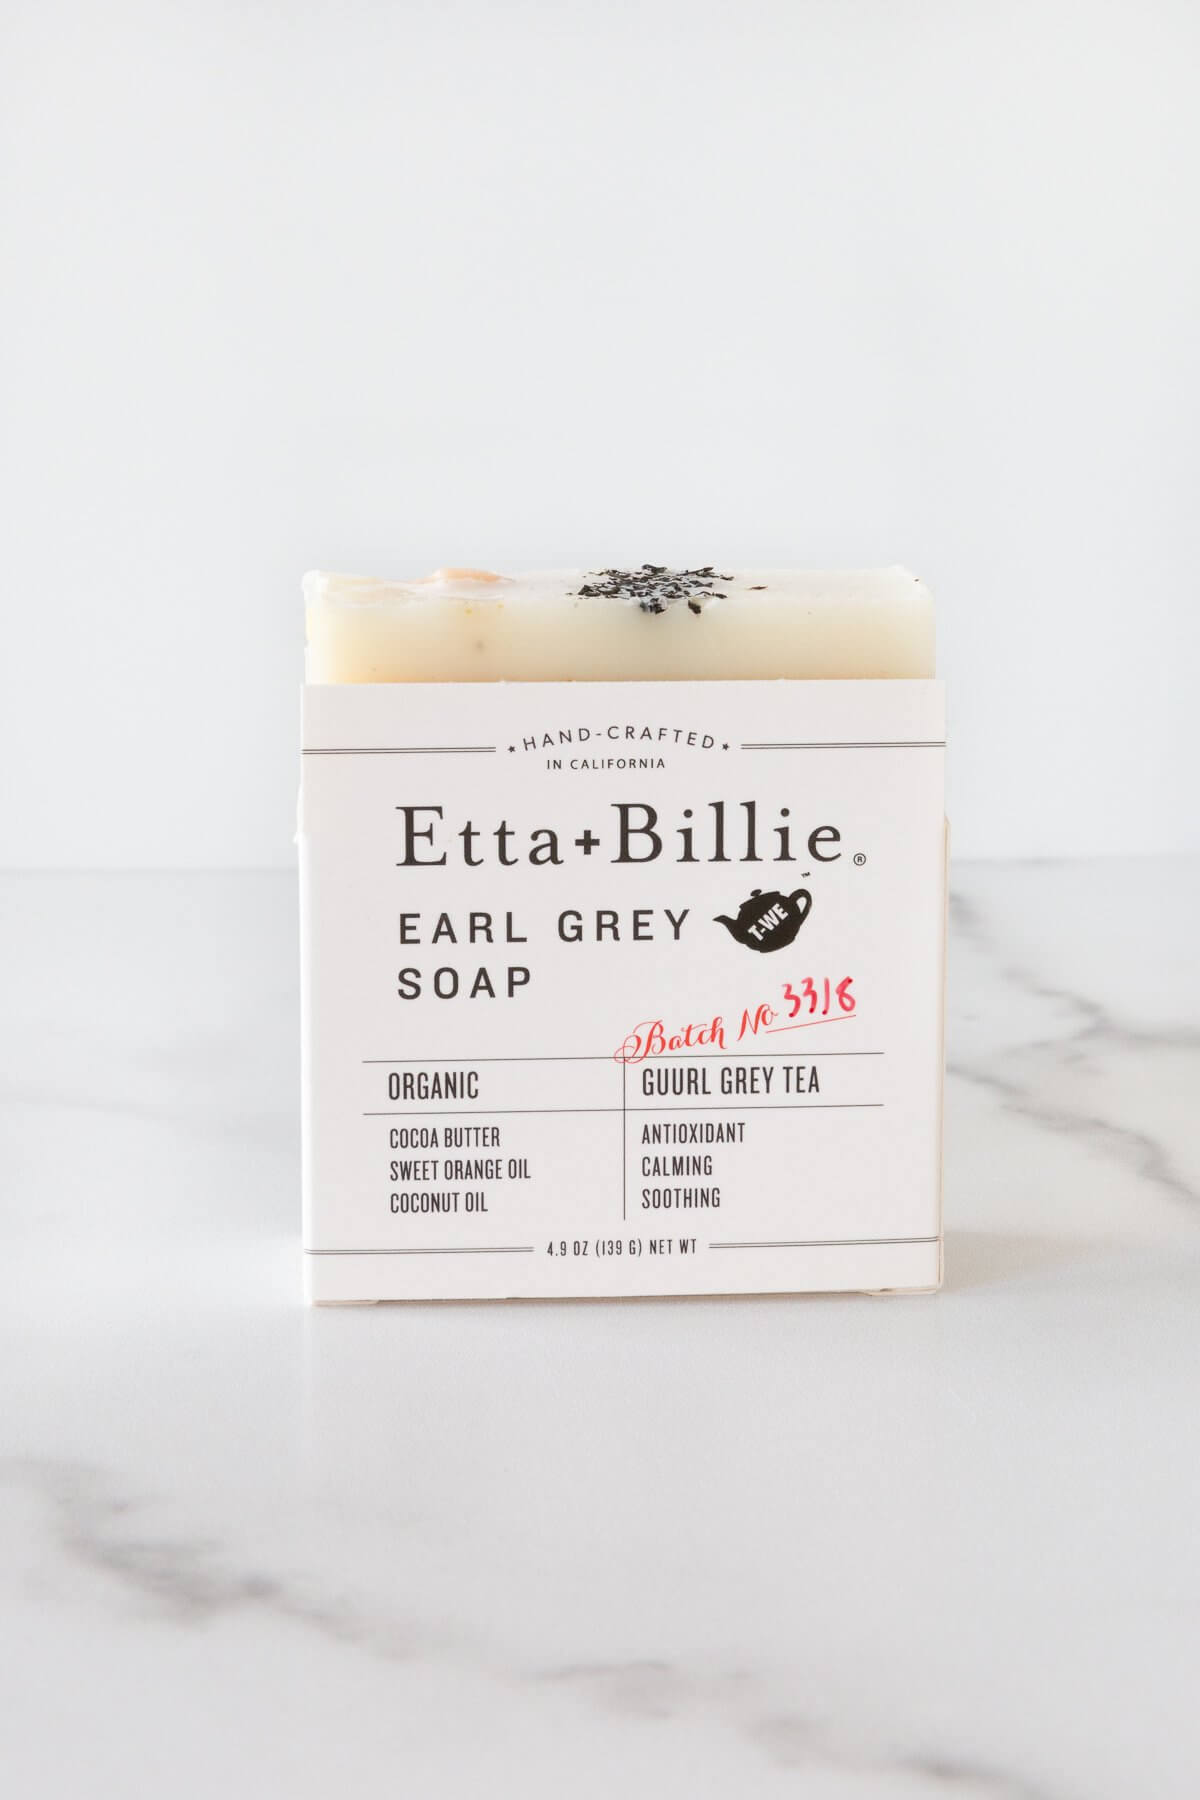 Etta + Billie Earl Grey Soap